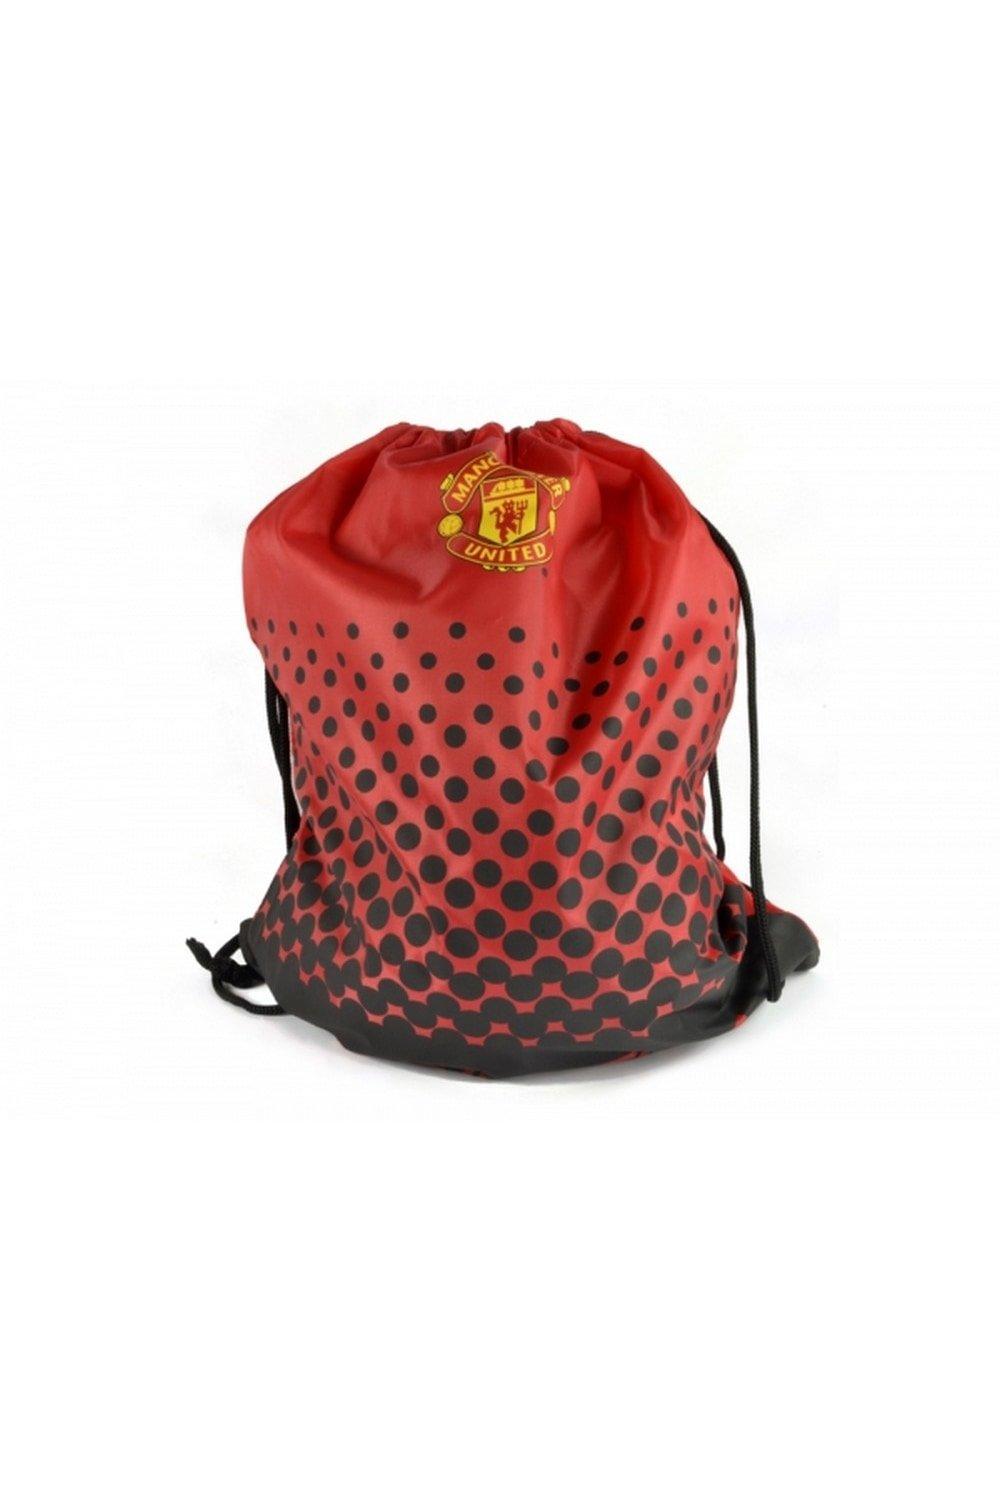 Спортивная сумка Манчестер Юнайтед Manchester United FC, красный футбольная форма детская манчестер юнайтед роналду 7 manchester united ronaldo бело черная